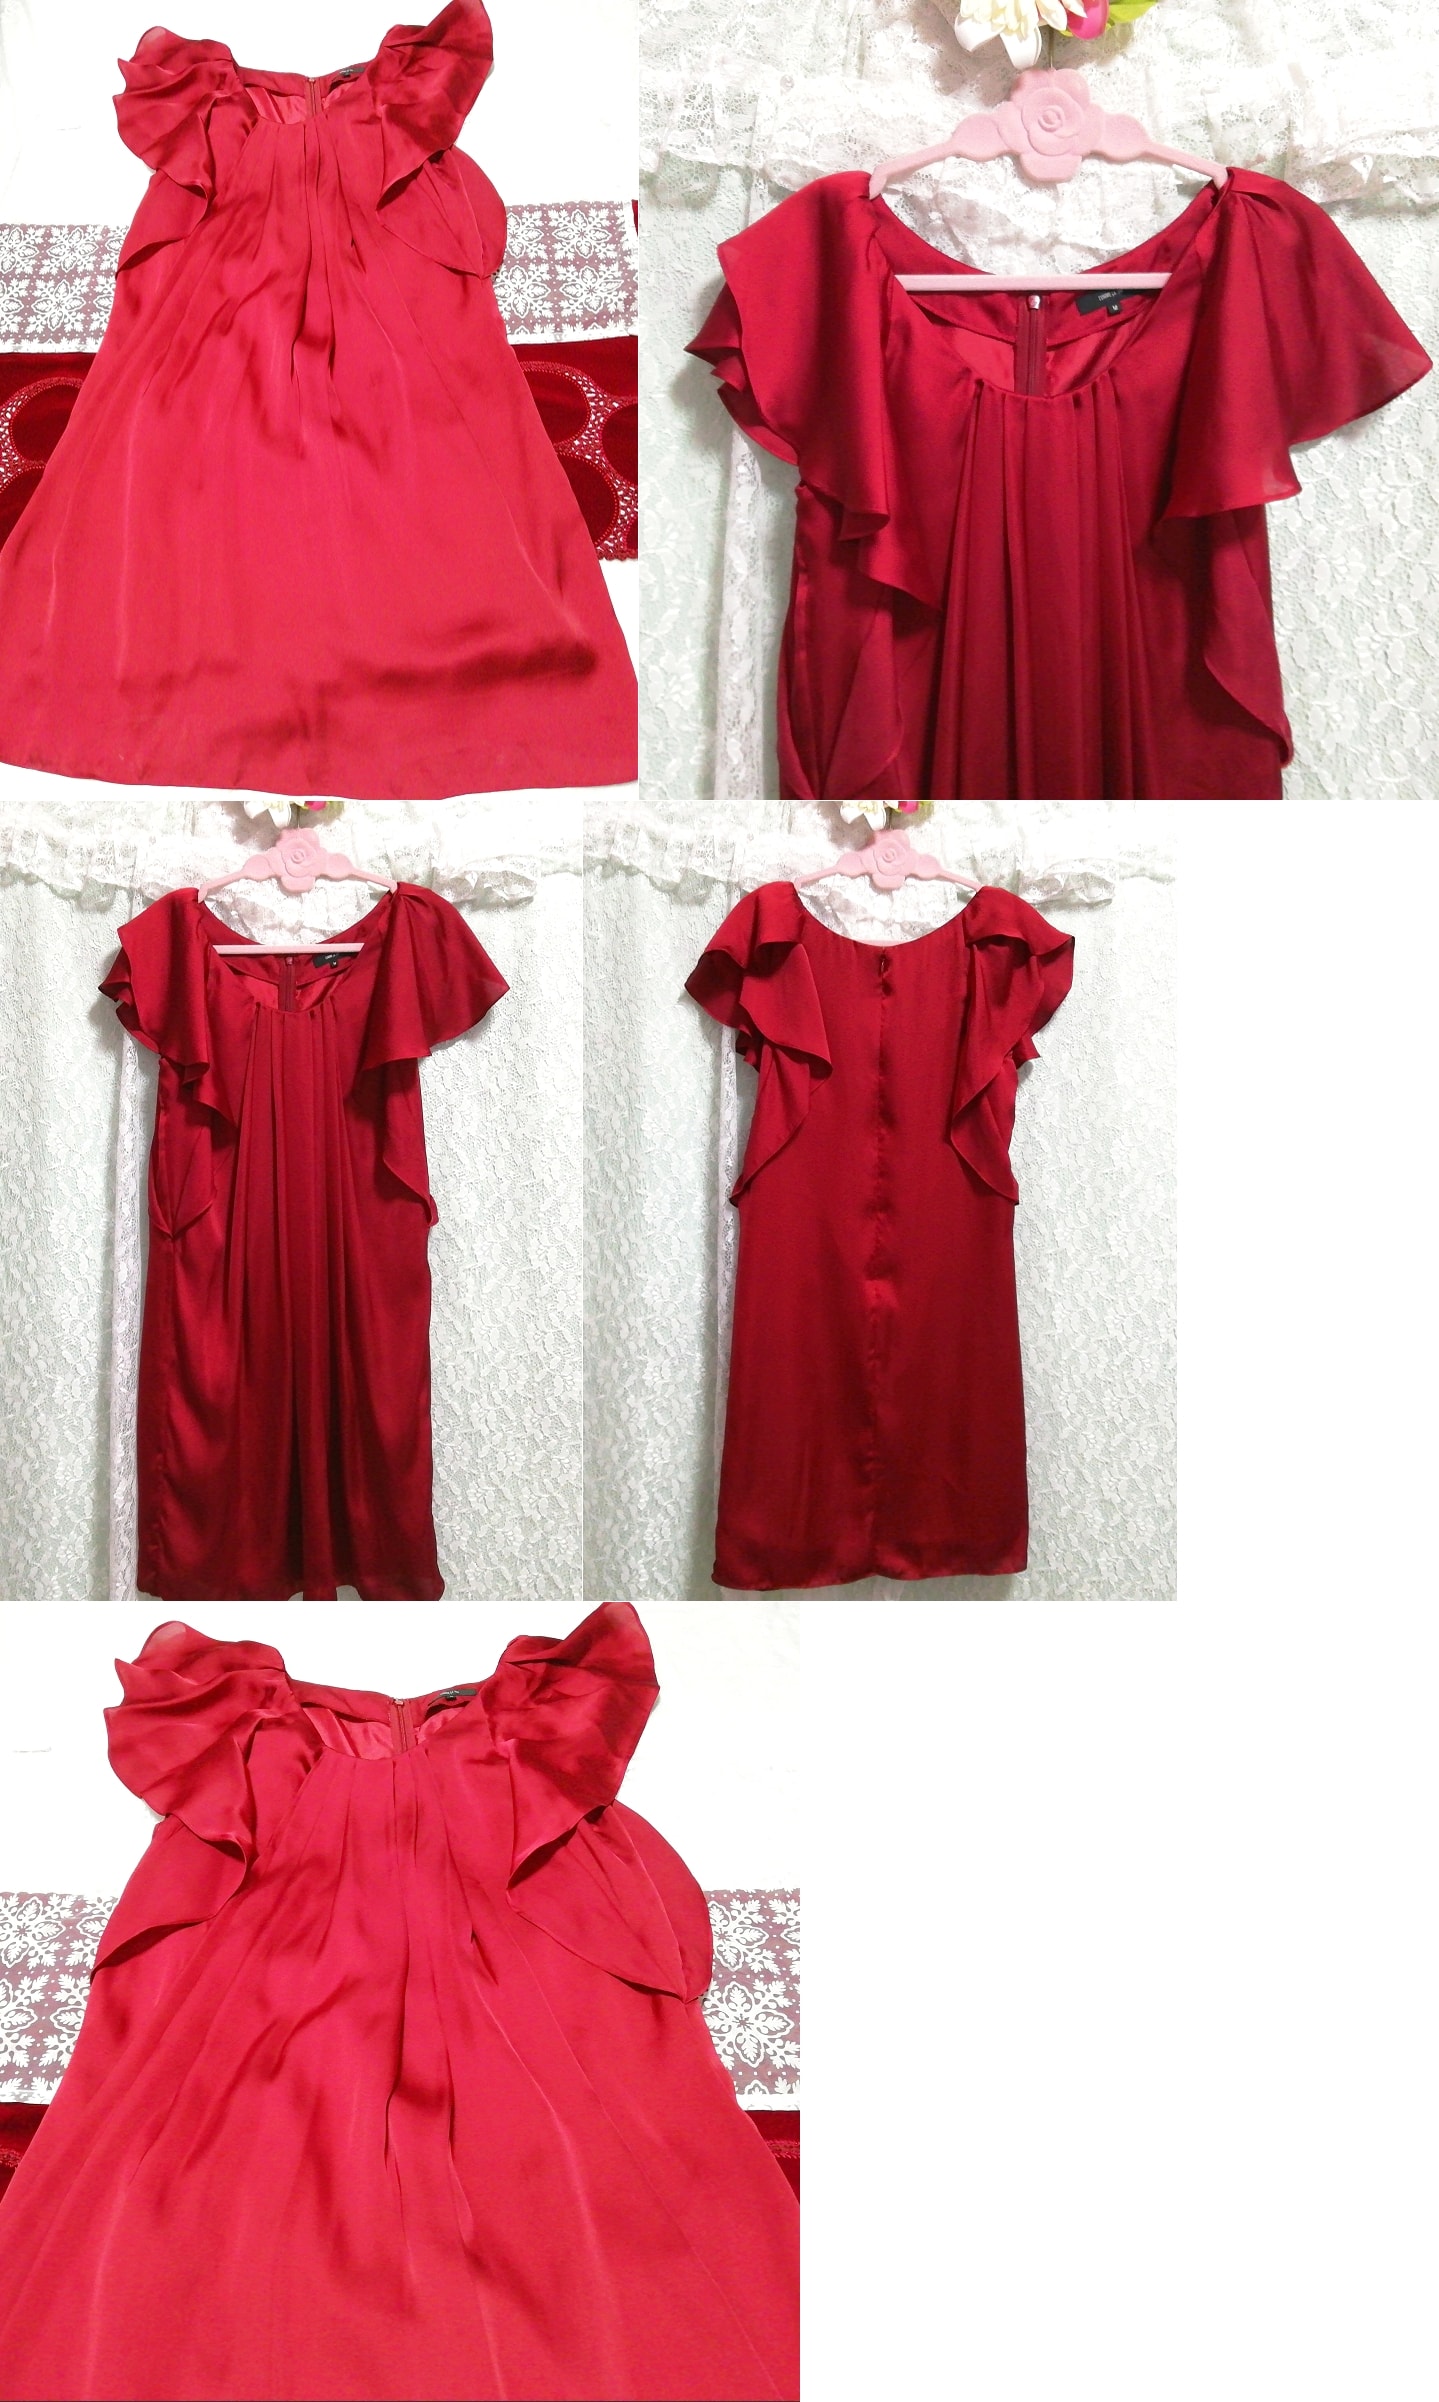 빨간색 새틴 튜닉 네글리제 잠옷 드레스, 무릎길이 스커트, m 사이즈